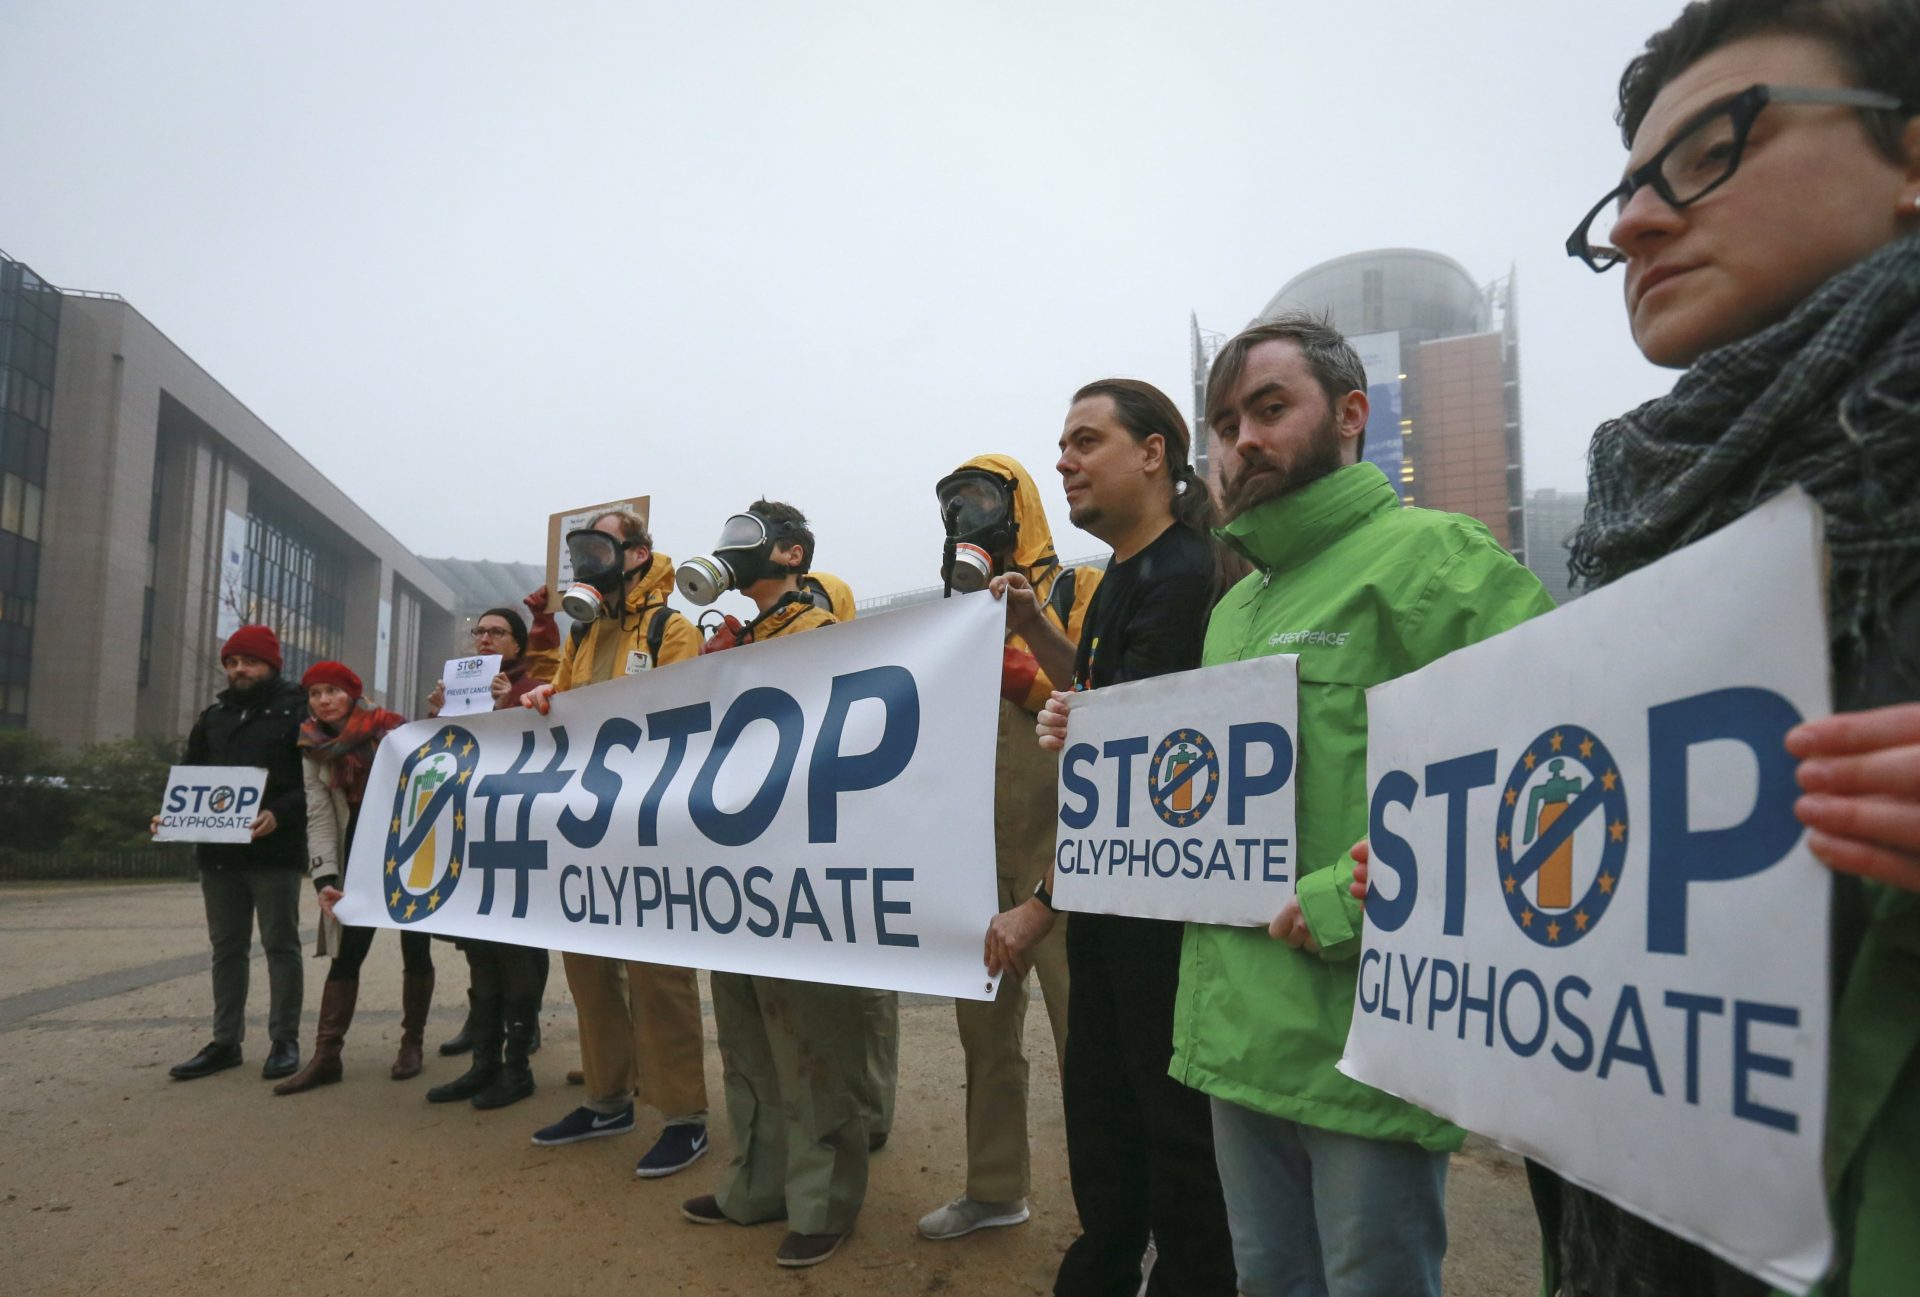 Activistas sostienen una pancarta en la que se puede leer "#stopglyphosate" (lit: Stop Glifosato) durante una protesta en la Plaza Schuman, próxima a la sede de las Instituciones Europeas en Bruselas (Bélgica). EFE/Archivo. Olivier Hoslet